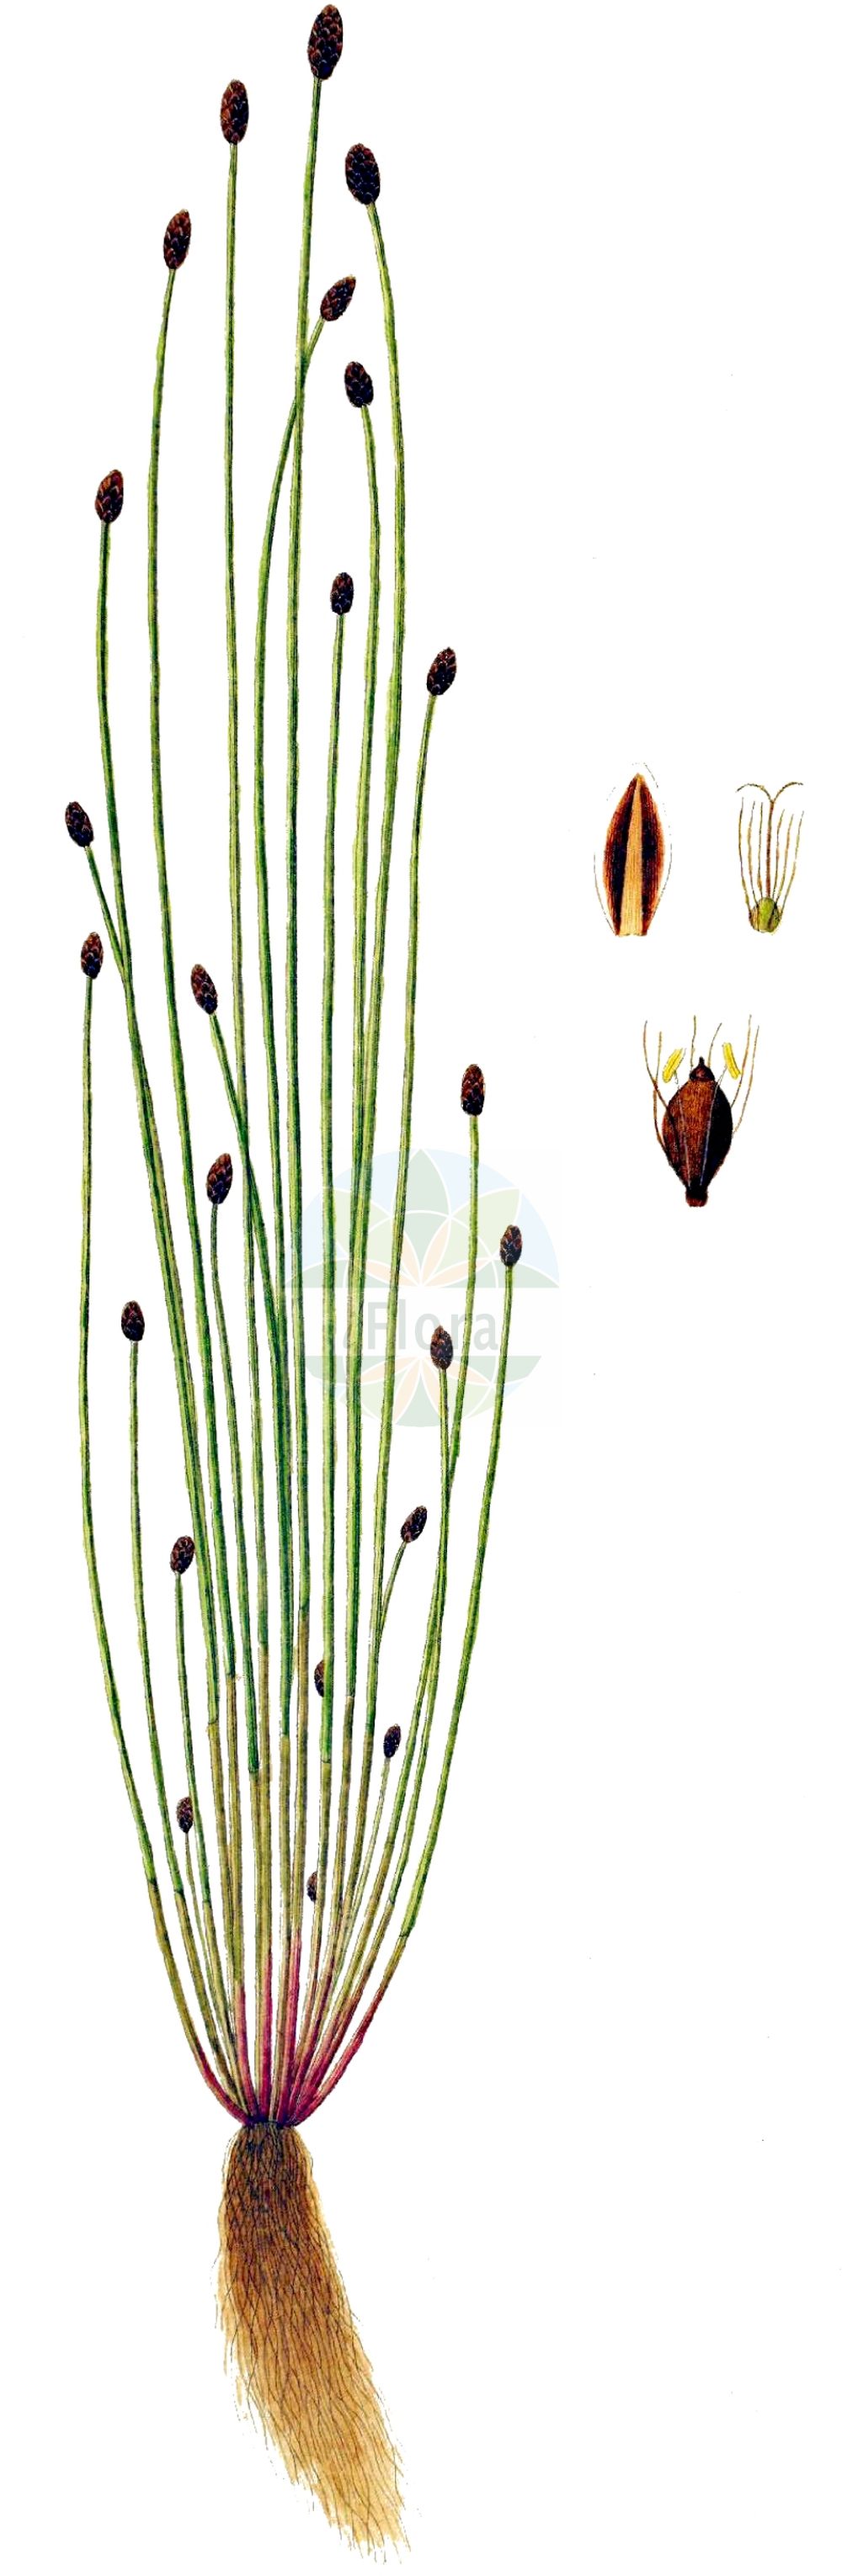 Historische Abbildung von Eleocharis ovata (Eiförmige Sumpfbinse - Oval Spike-rush). Das Bild zeigt Blatt, Bluete, Frucht und Same. ---- Historical Drawing of Eleocharis ovata (Eiförmige Sumpfbinse - Oval Spike-rush). The image is showing leaf, flower, fruit and seed.(Eleocharis ovata,Eiförmige Sumpfbinse,Oval Spike-rush,Eleocharis ovata,Scirpus ovatus,Eifoermige Sumpfbinse,Eikoepfige Sumpfbinse,Ei-Sumpfbinse,Teichriet,Oval Spike-rush,Ovate Spikerush,Eleocharis,Sumpfbinse,Spikerush,Cyperaceae,Sauergräser,Sedge family,Blatt,Bluete,Frucht,Same,leaf,flower,fruit,seed,Oeder (1761-1883))